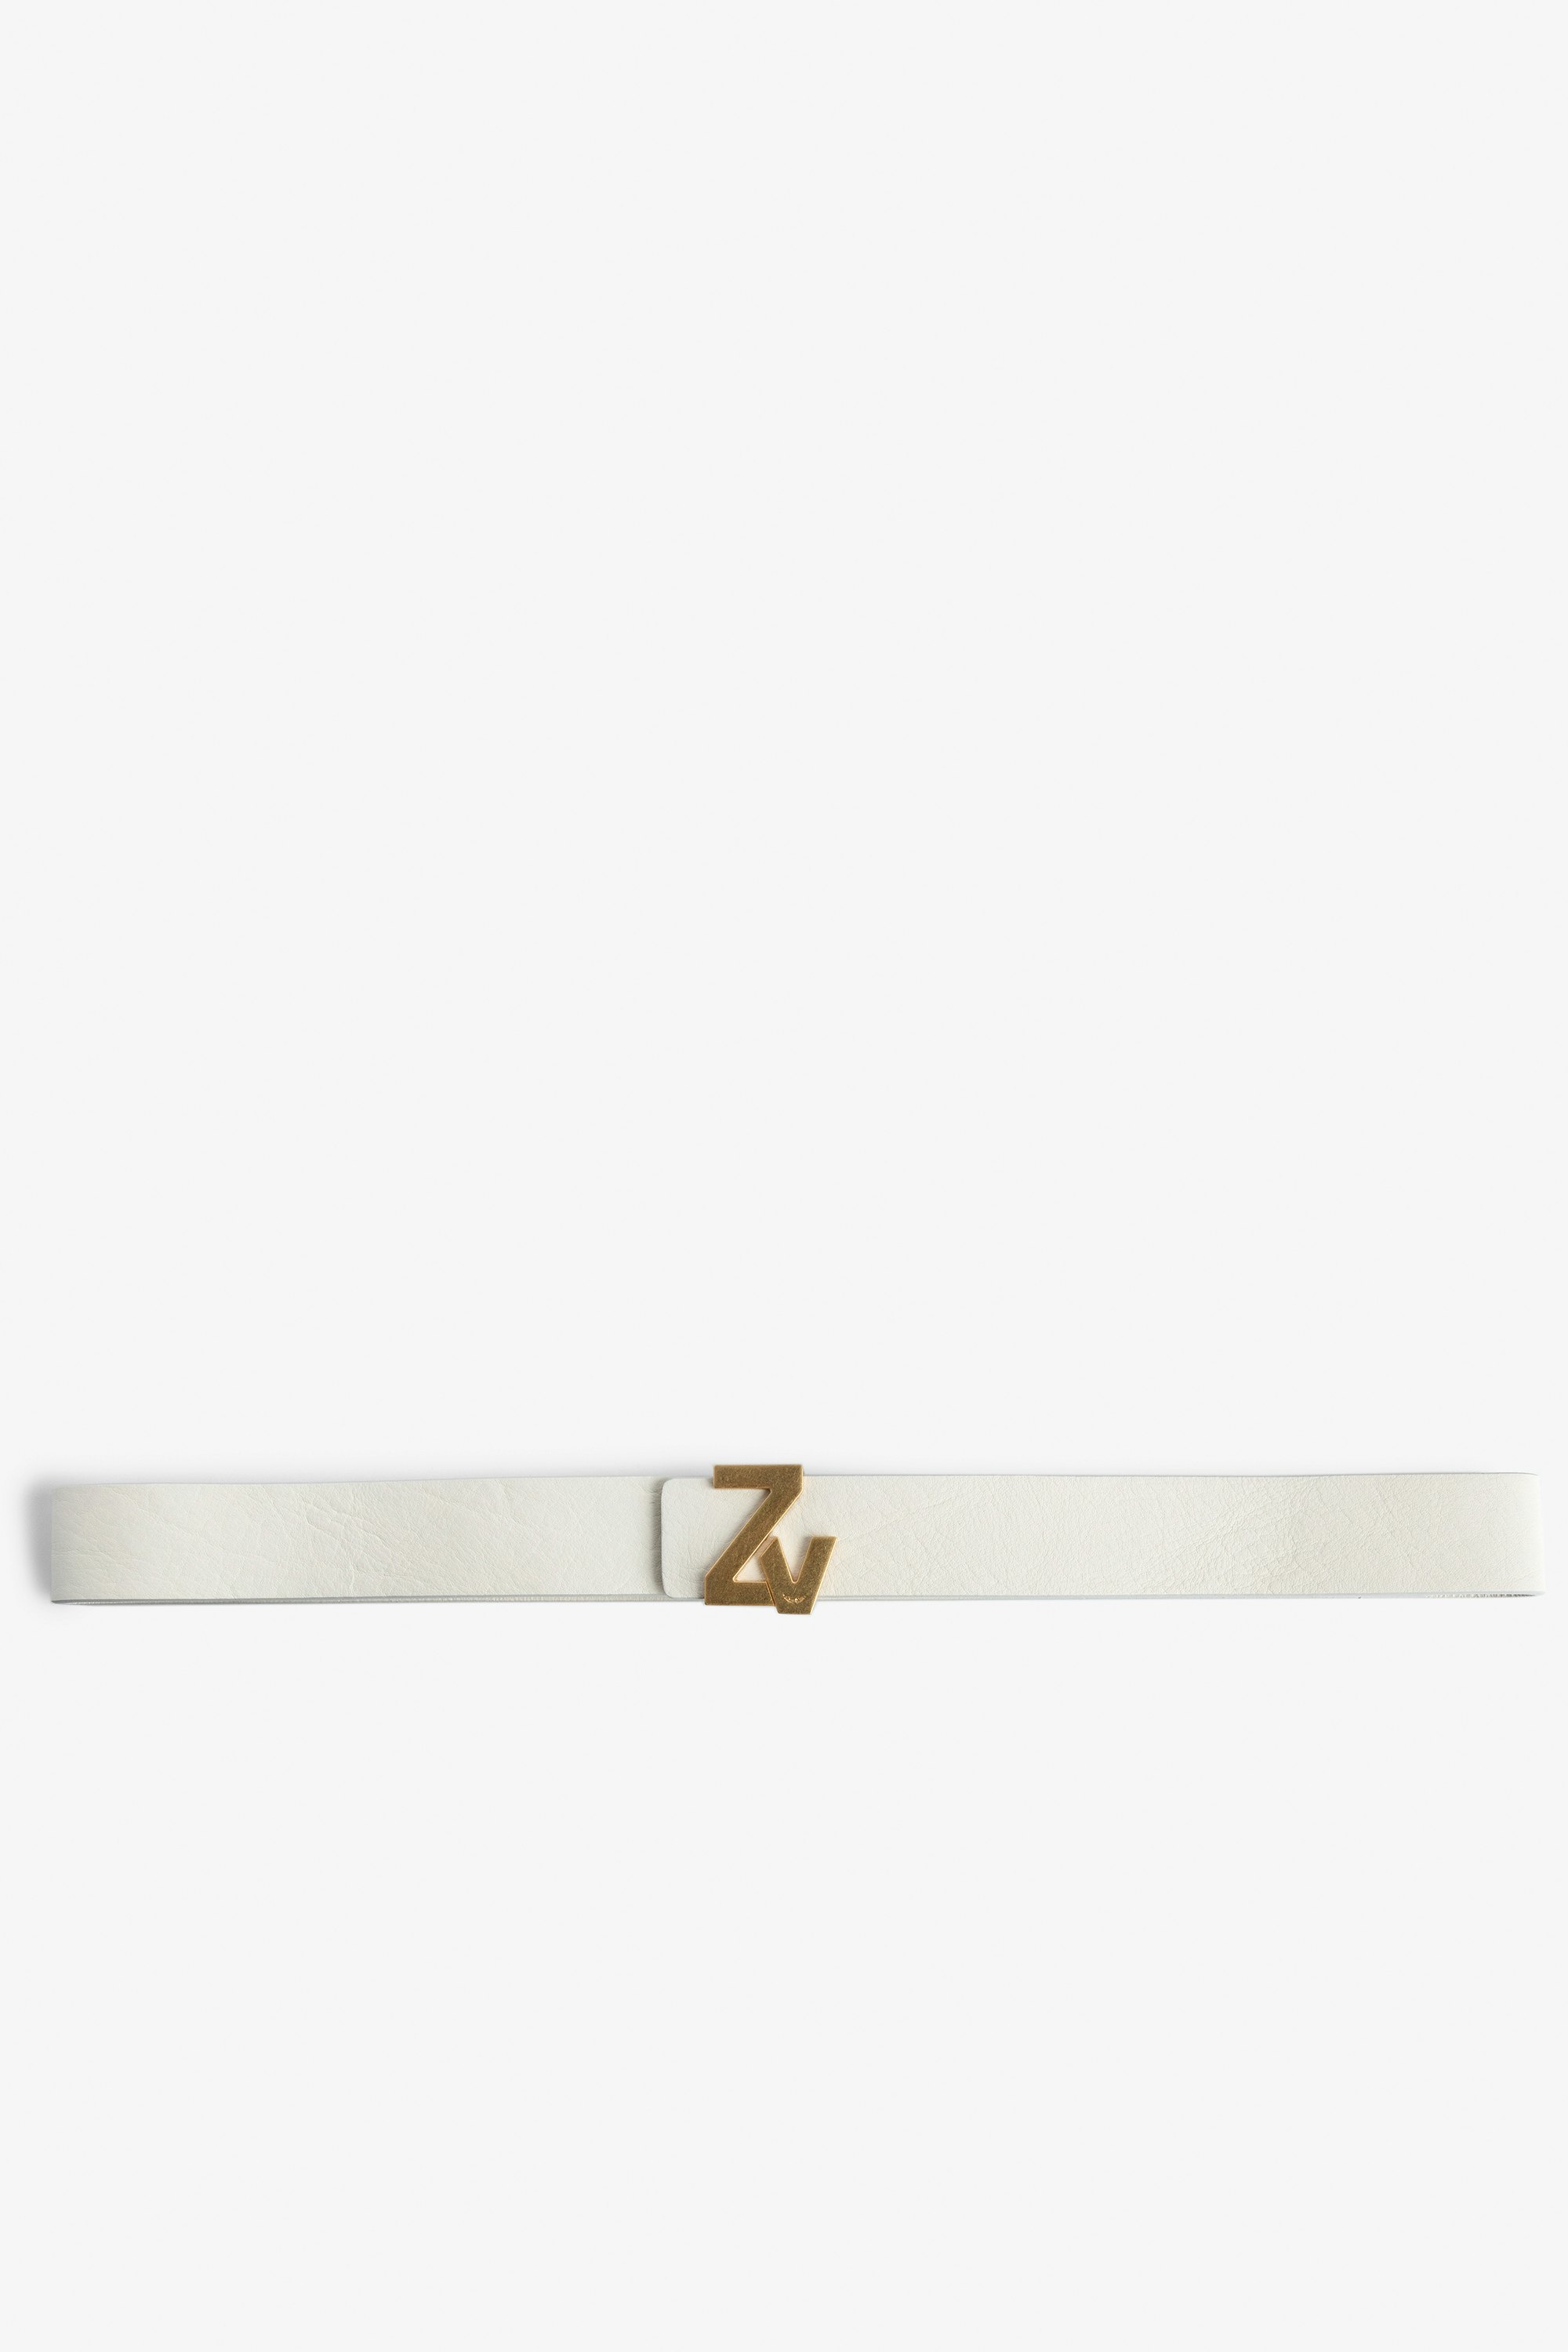 ZV Initiale La Belt - Women's belt in ecru leather with gold-tone ZV buckle